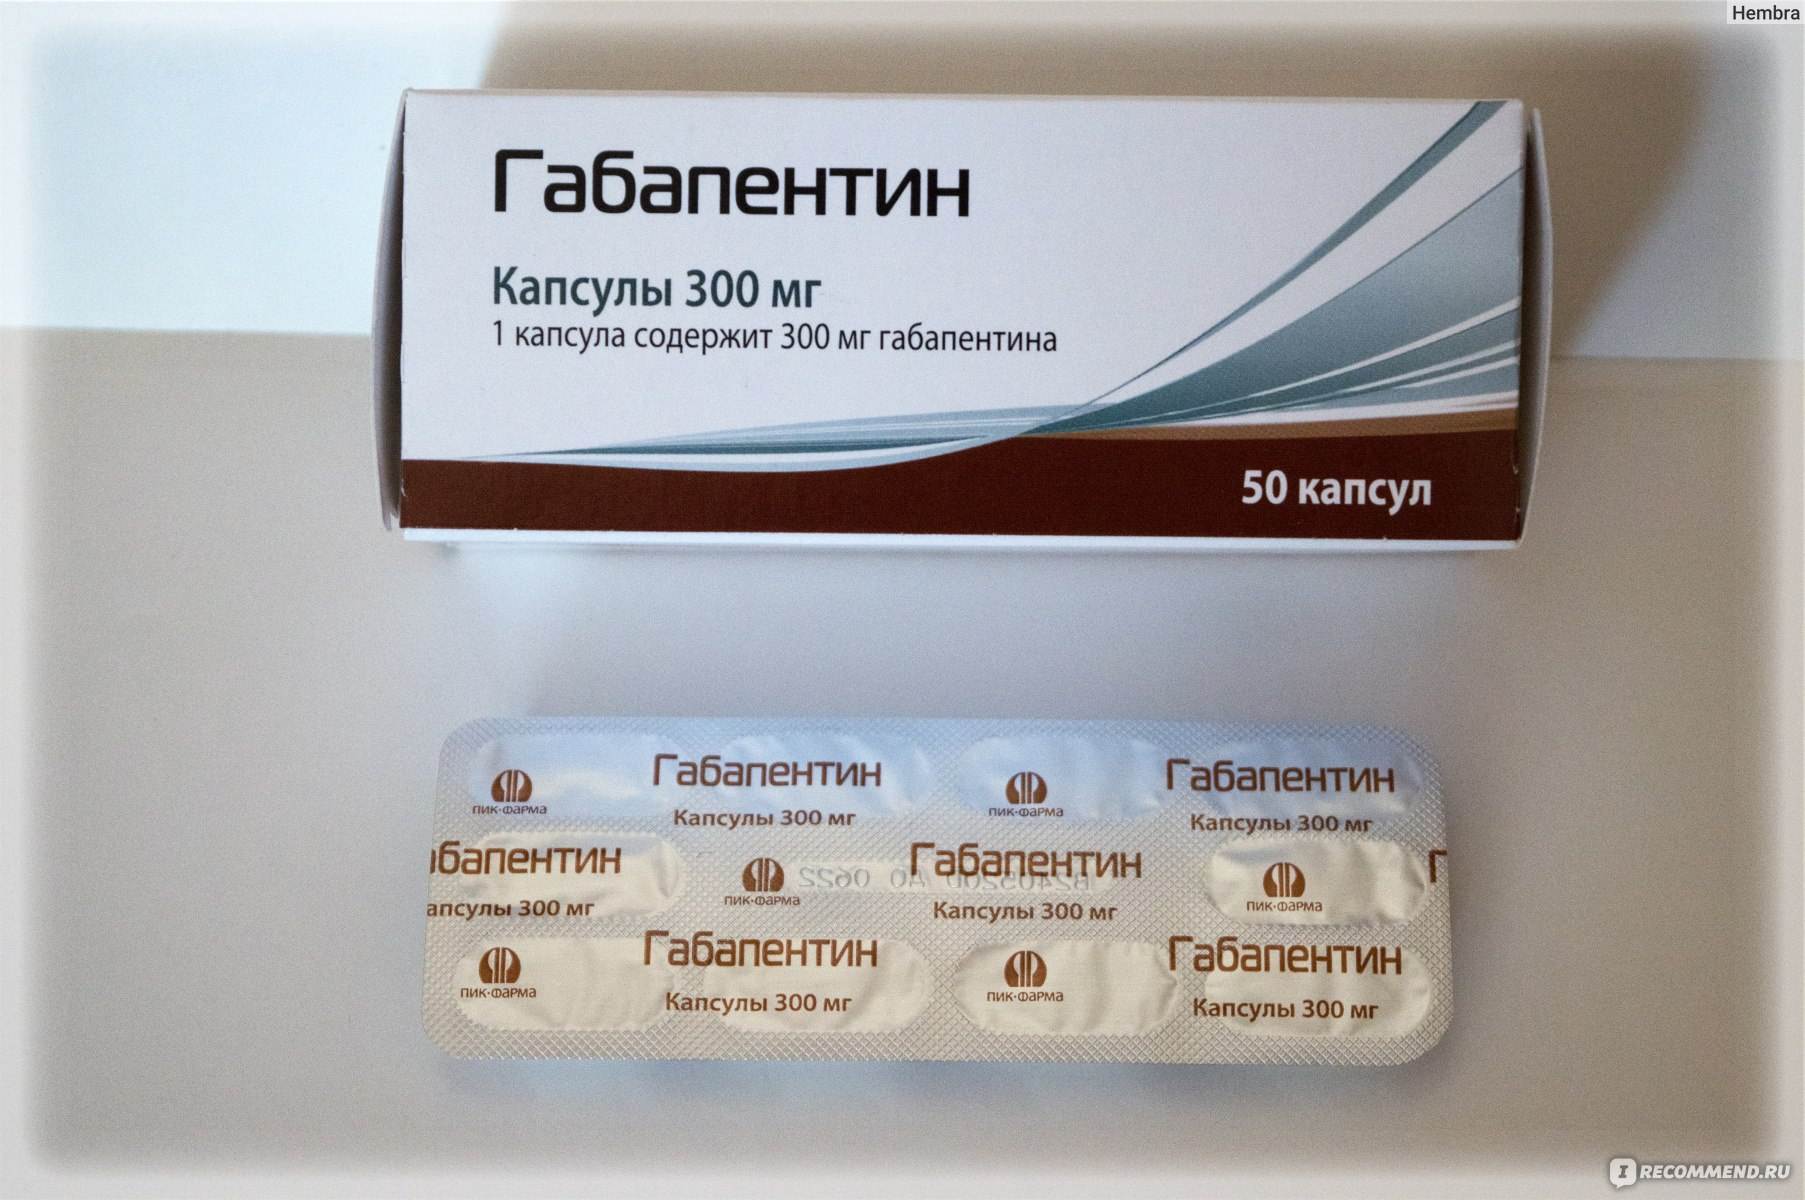 Габапентин наркотический препарат: состав, дозировка, зависимость и лечение | наркологическая клиника maavar.